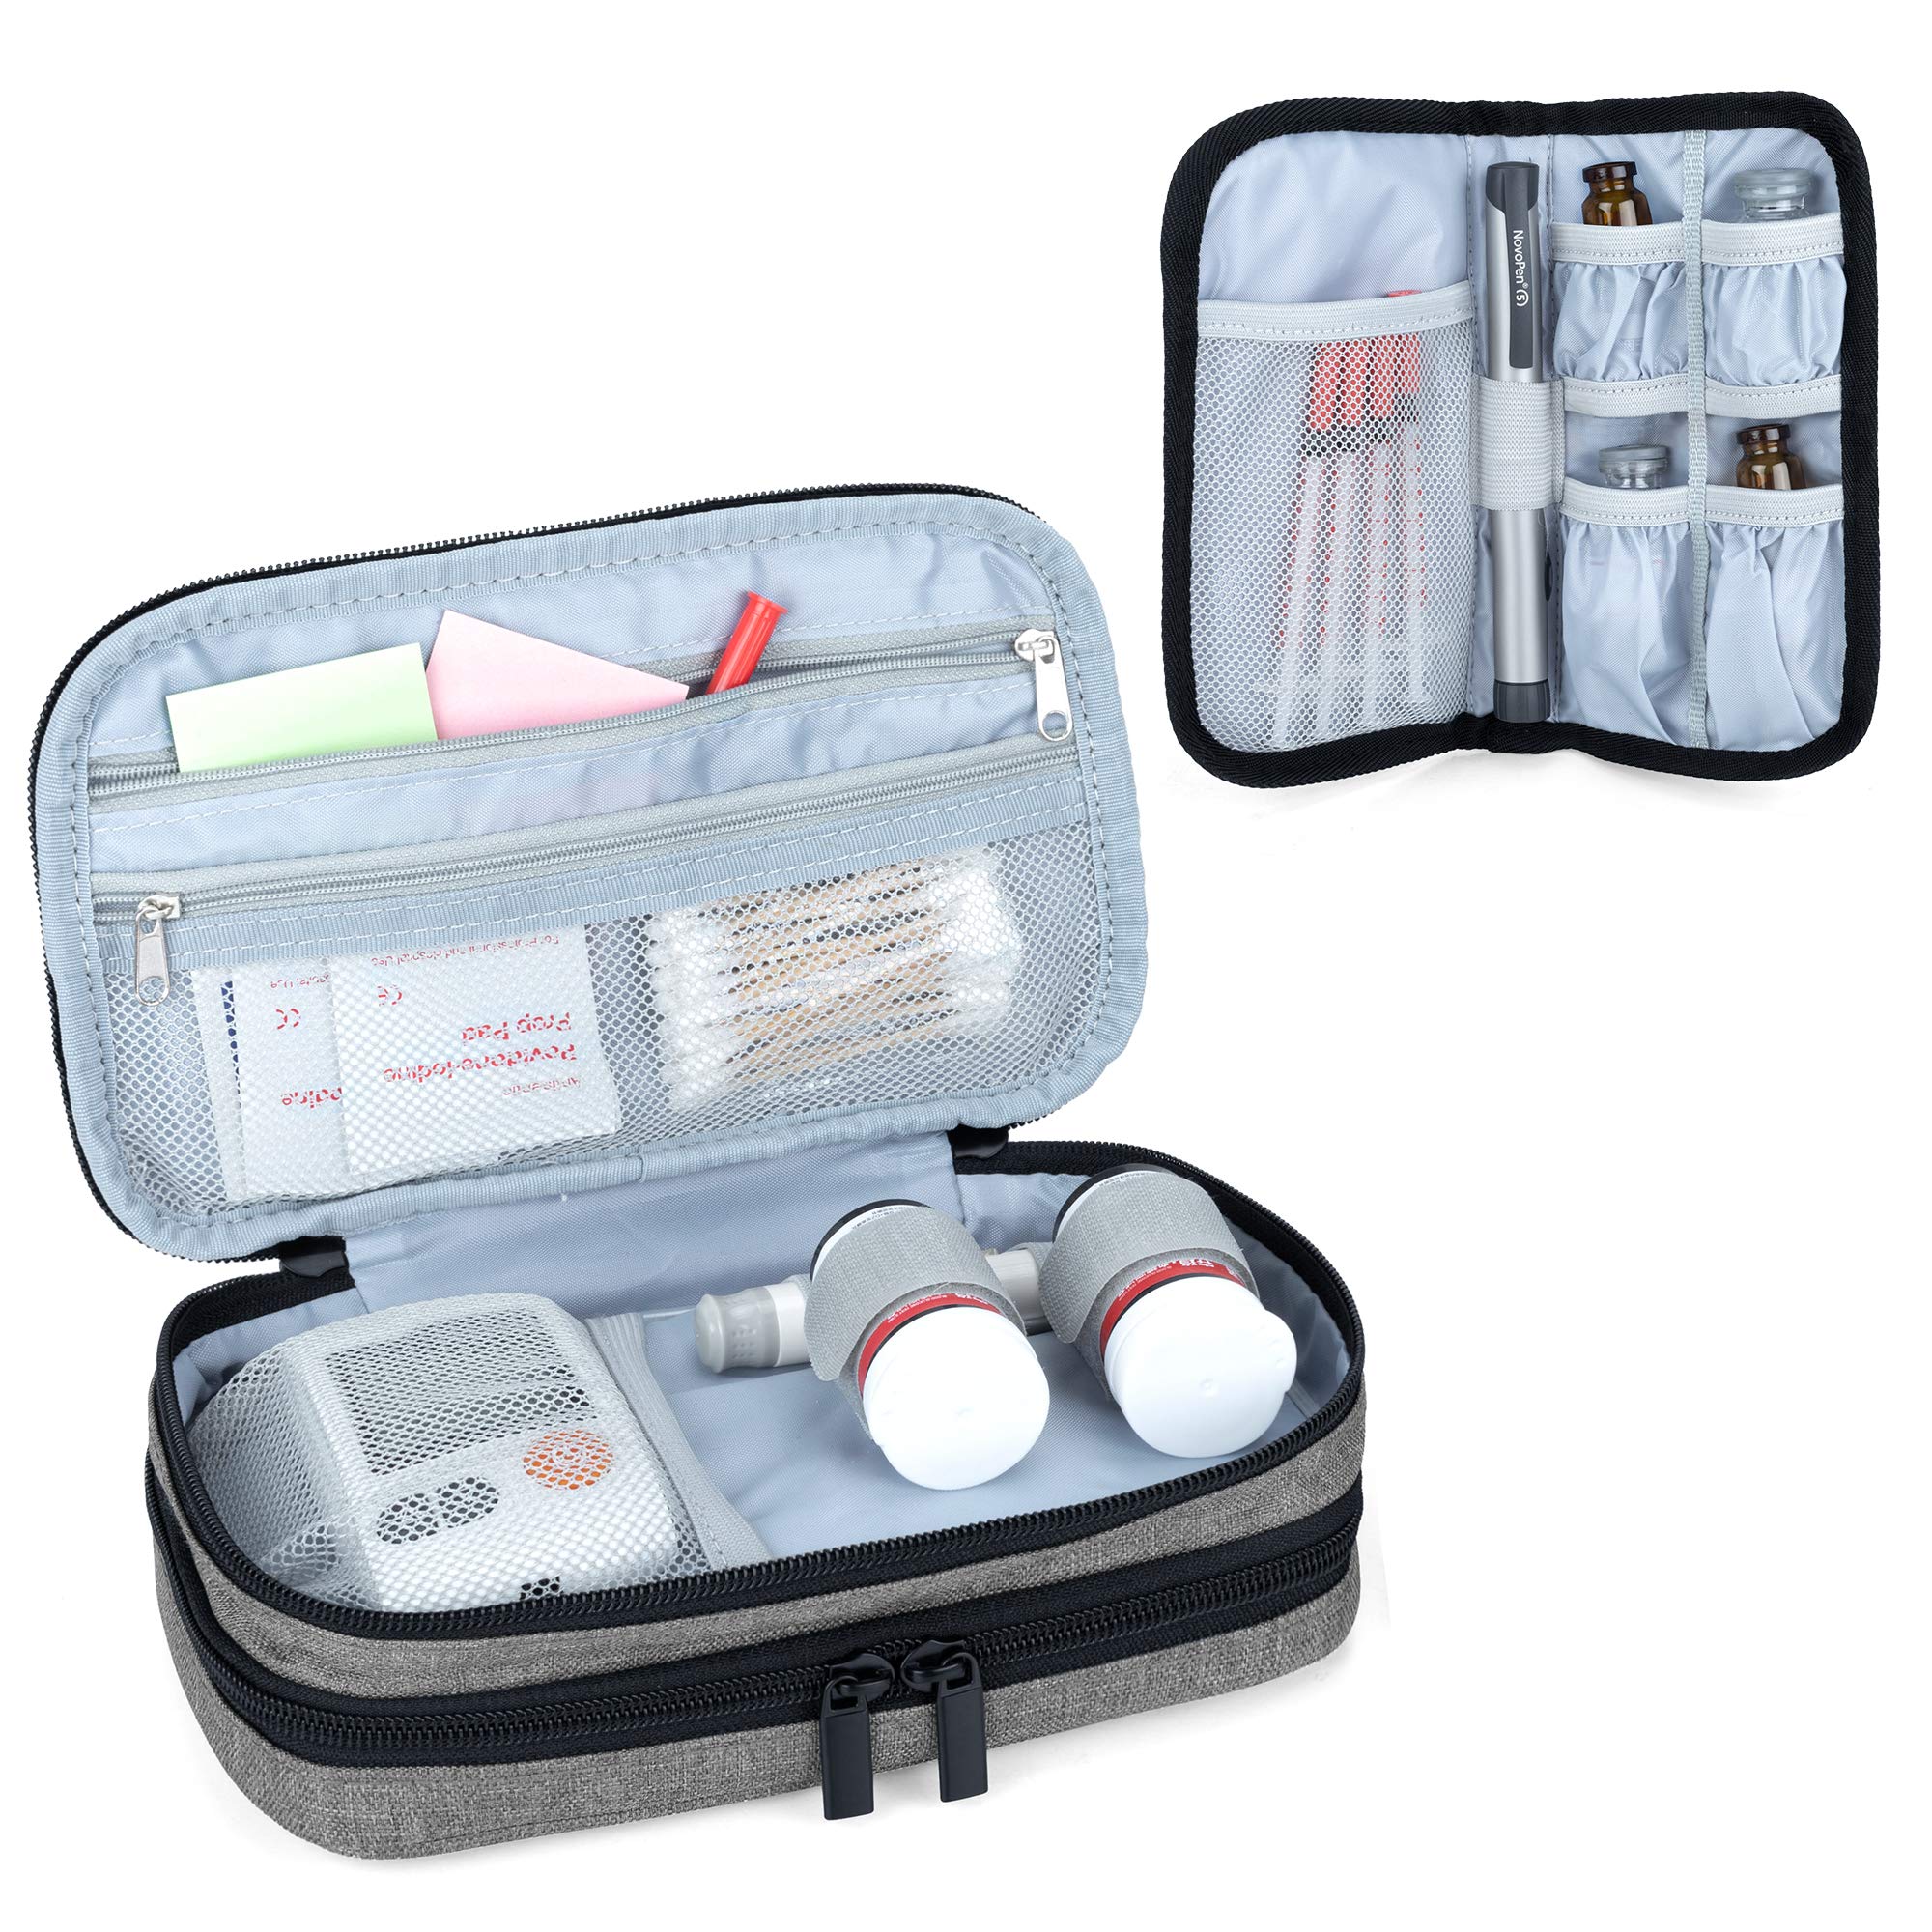 商品情報商品の説明（バッグのみの商品です。医療器具は含まれておりません。）主な仕様 【素材】丈夫なナイロン（外装）、クッション材（中身）、アルミシート（第二層の内装）（バッグのみの商品です。医療器具と冷却剤は含まれておりません。）br【収納力】第一層には血糖値測定器、穿刺器具、穿刺針、センサー、消毒綿などの血糖測定用品を収納します。第二層には保冷剤、インスリンペン、注射針などのインスリン注射用品を収納します。br【特徴】マジックテープとゴムバンドはペン型の器具を固定して、取り出しも簡単です。br【寸法】外寸：22cm x 14cm x 7.5cm、内寸：21cm x 12cm x 3cm（第一層と第二層）br【便利】普段使いも、外出の際にも一式収まるコンパクトなポーチです。取り外し可能なハンドルも付いています。